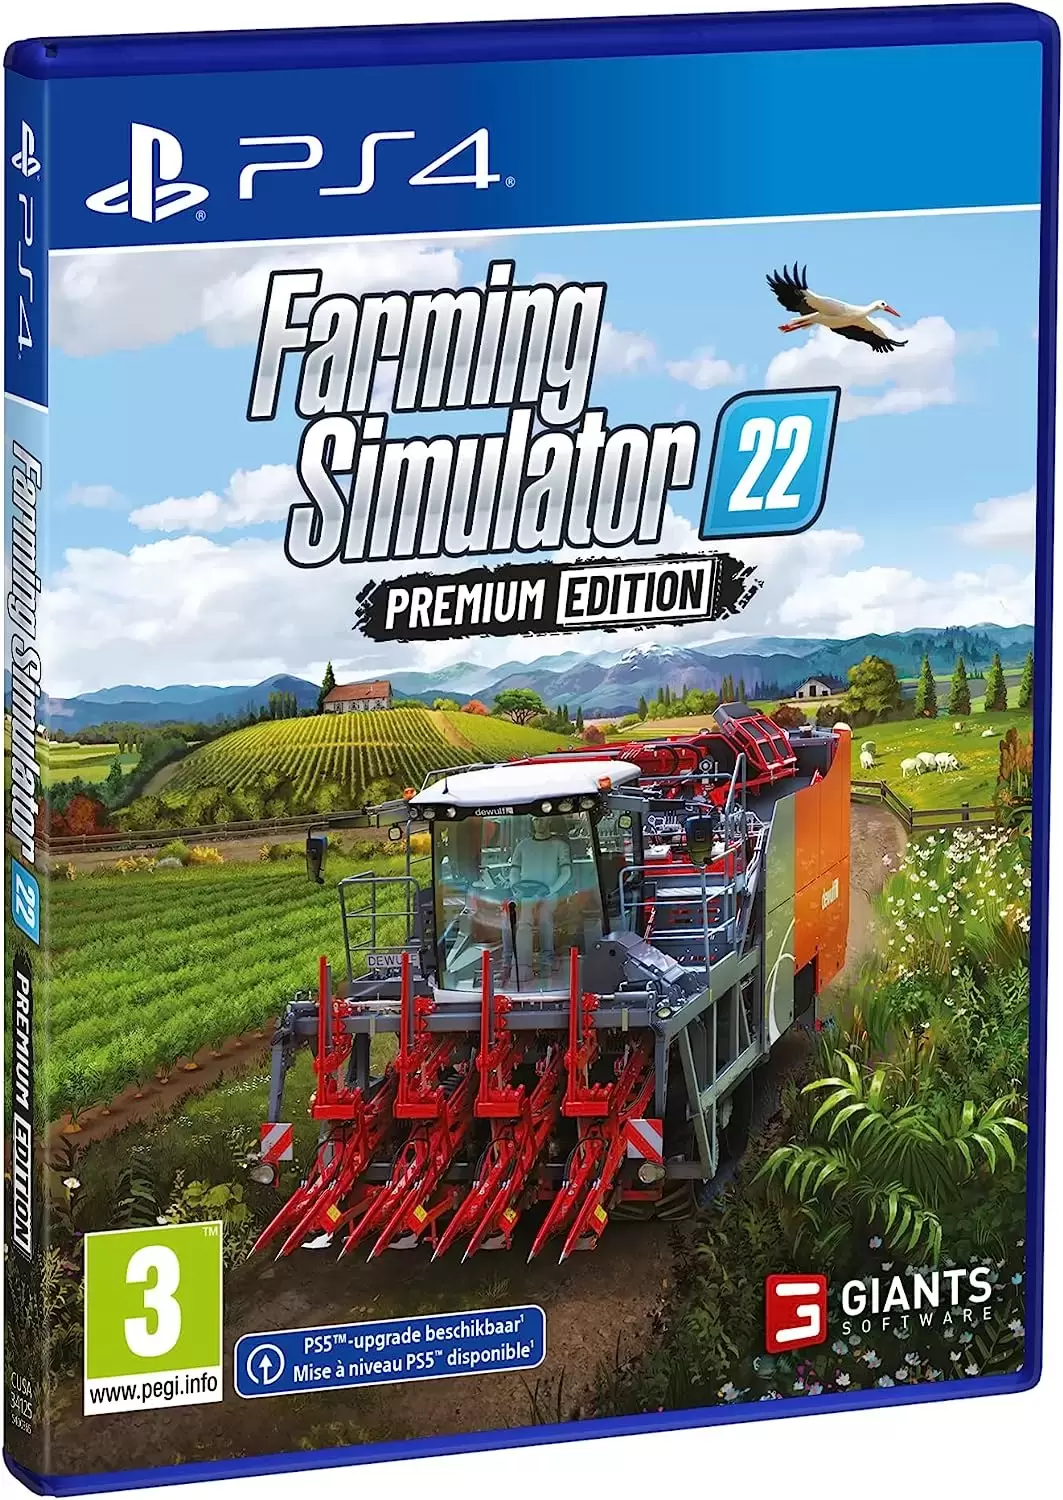 PS4 Games - Farming Simulator 22 - Premium Edition